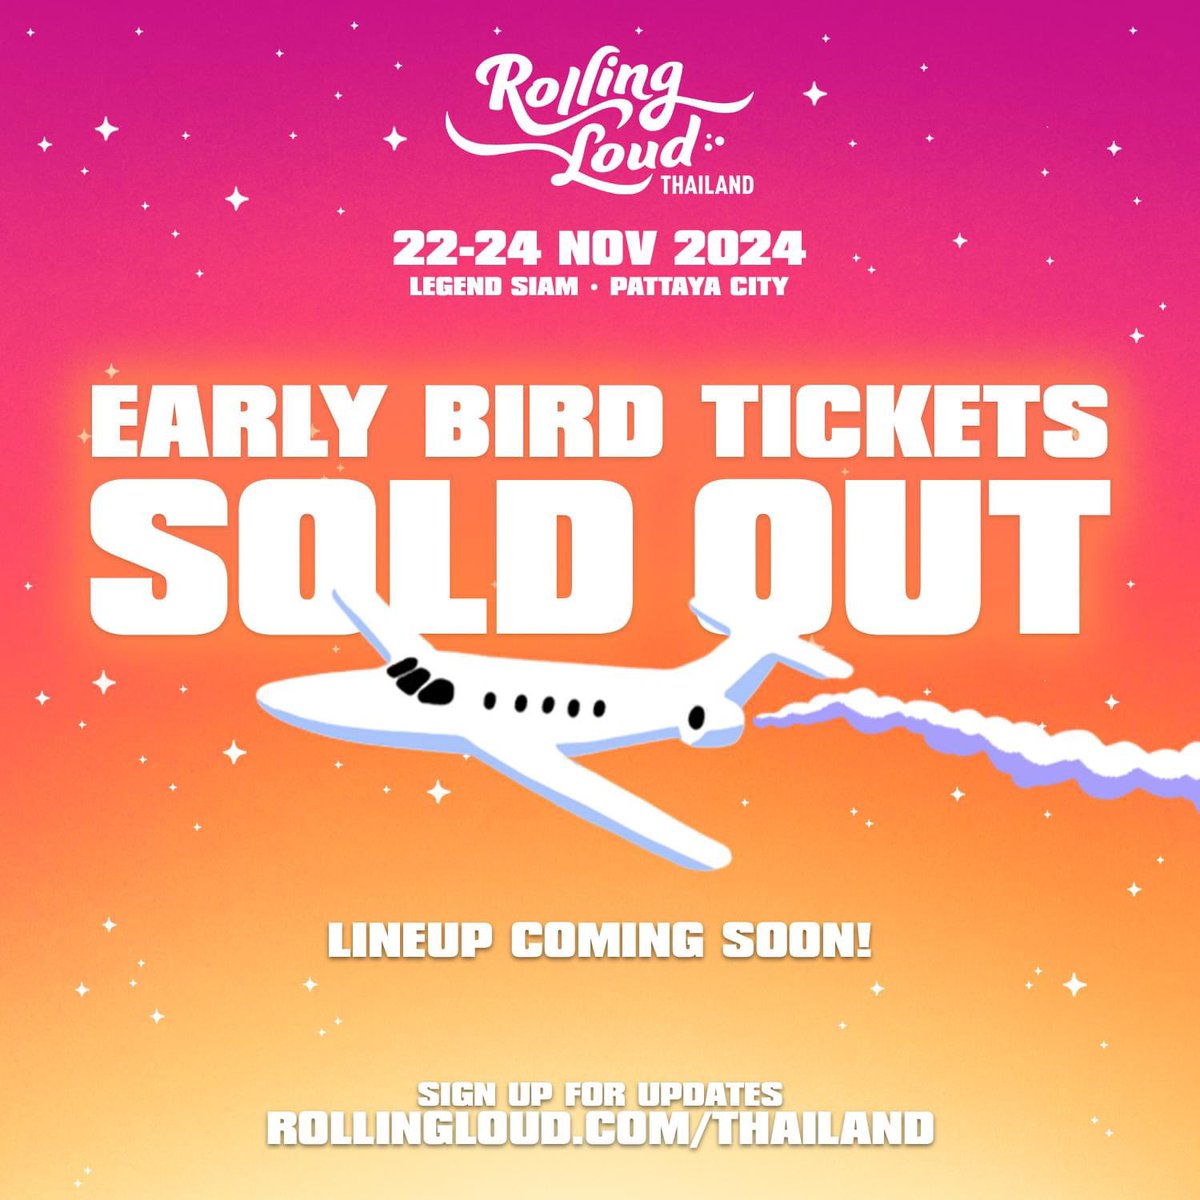 ขอบคุณทุกคนการตอบรับชาวฮิปฮอป! Rolling Loud Thailand 2024 เตรียมระเบิดความมันส์ไปด้วยกัน พบกับ Line up สุดเดือดเร็ว ๆ นี้ 😈 . Wow, shoutout to everyone tapping in early 😎 EARLY BIRD TICKETS ARE SOLD OUT! We got you. Thailand 2024 Lineup coming soon! SIGN UP FOR UPDATES 👉